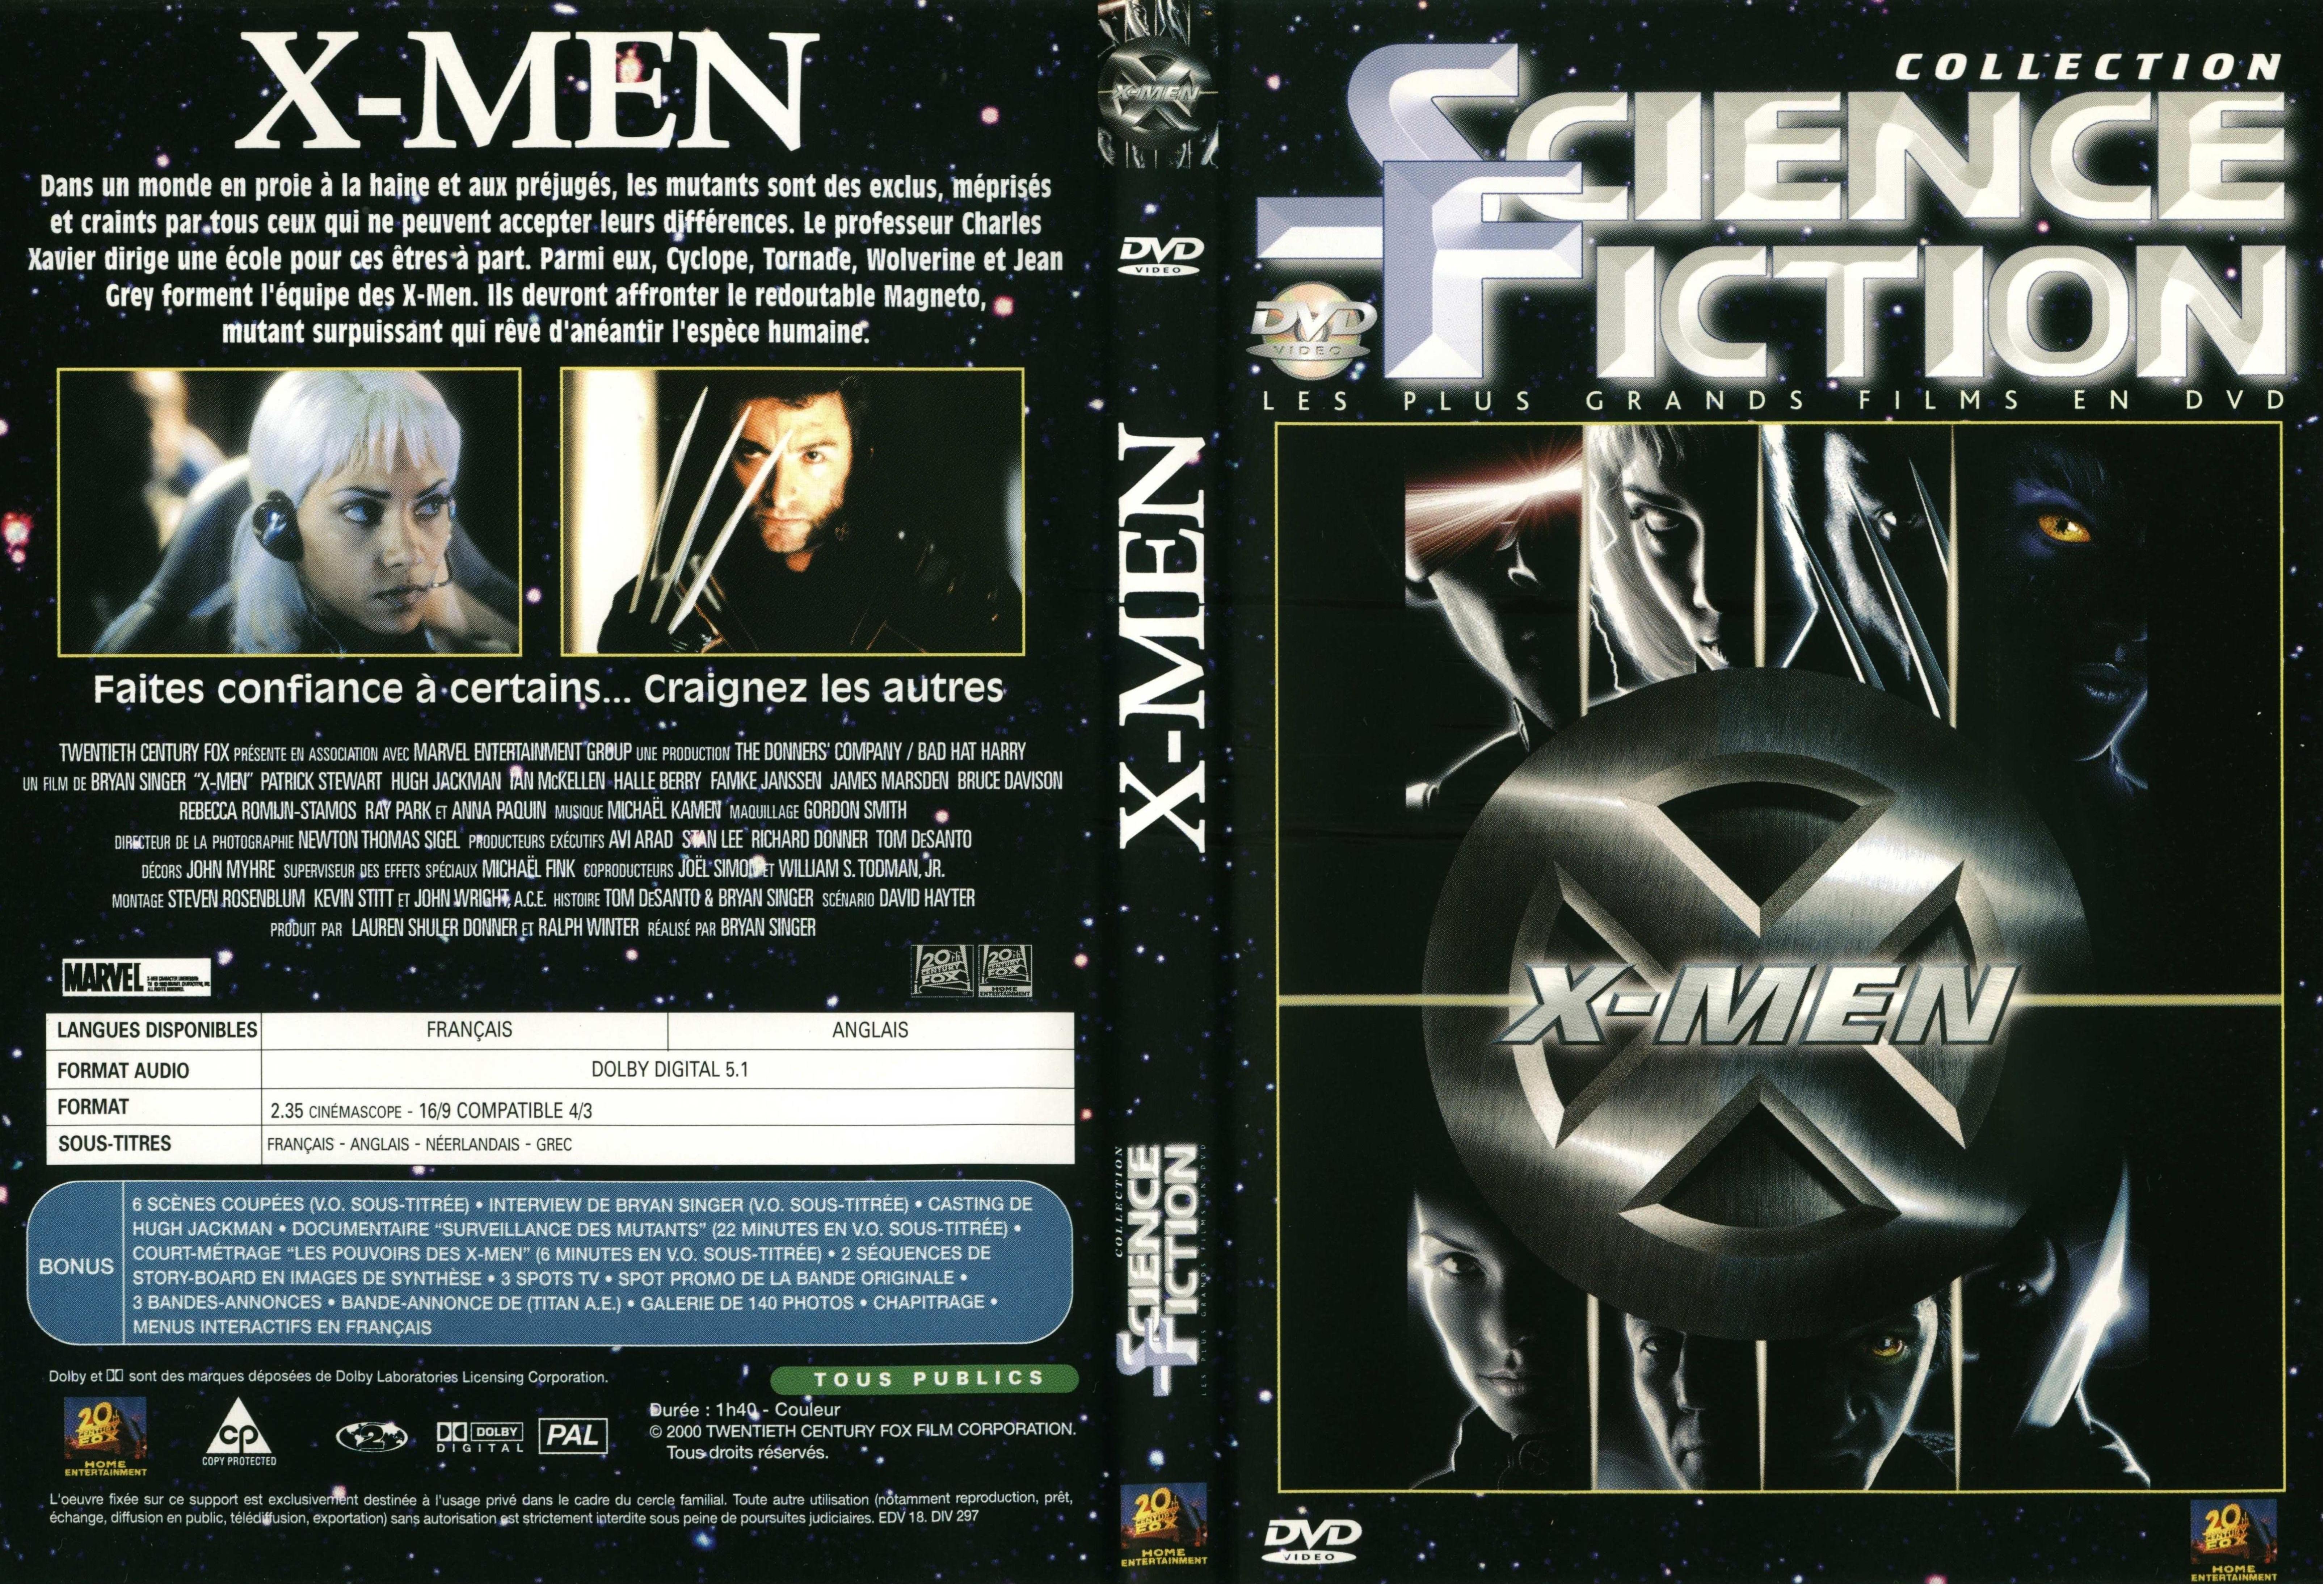 Jaquette DVD X-men v3